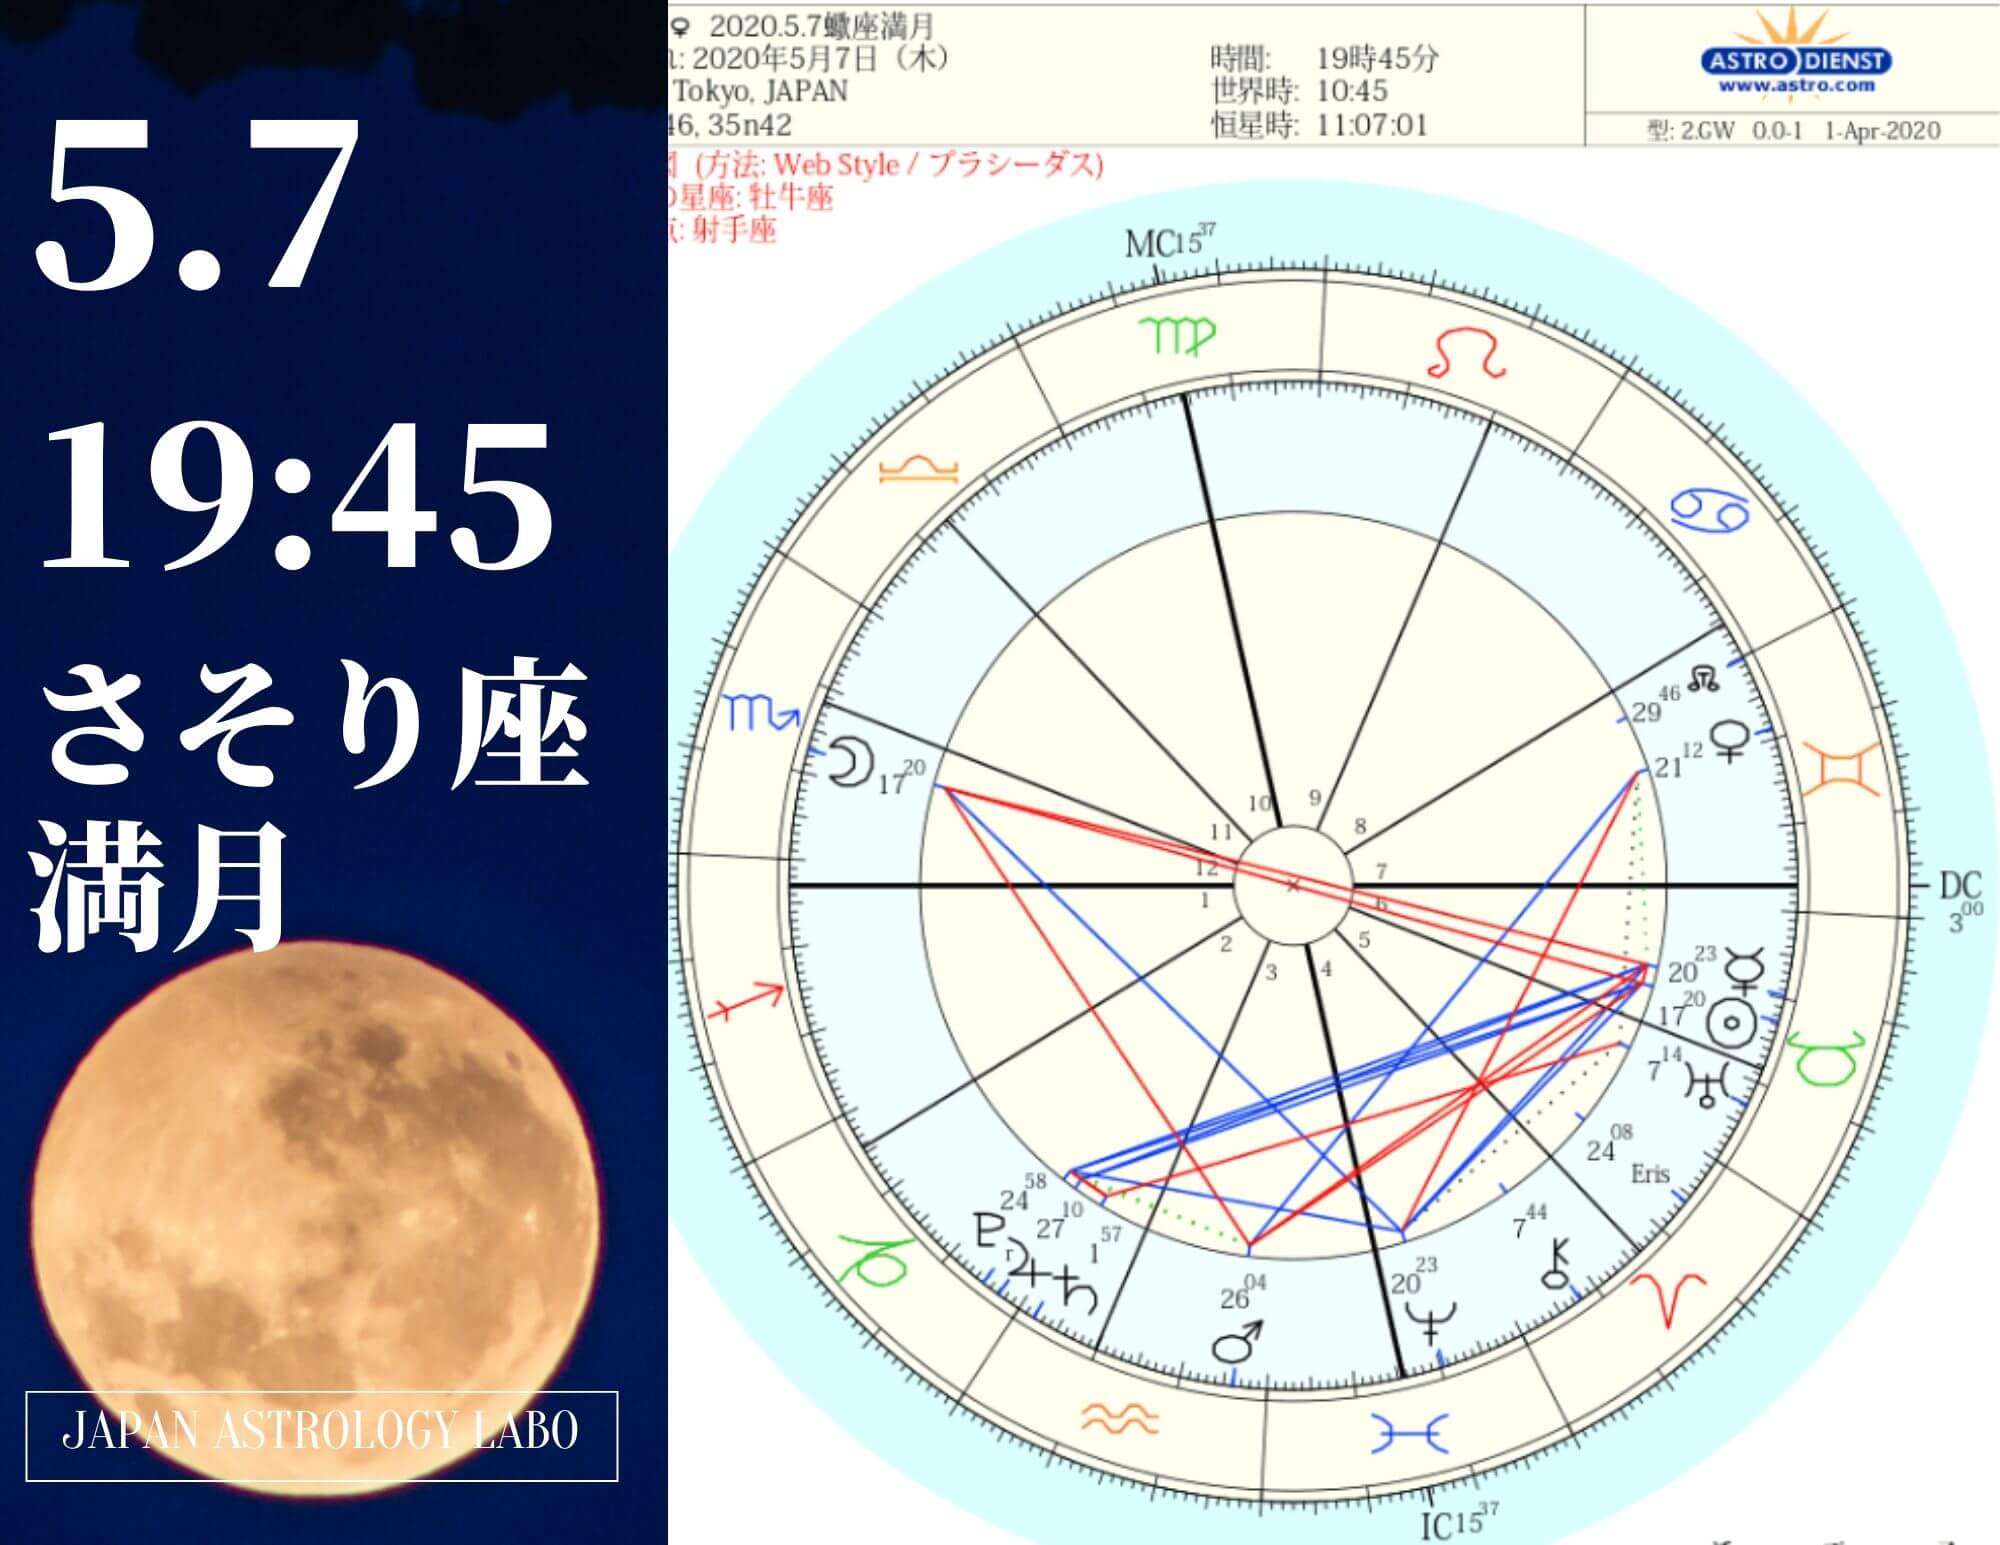 さそり座満月狭い時間や空間から出ていく進みへ Japanastrologylabo西洋占星術オンライン講座 公式